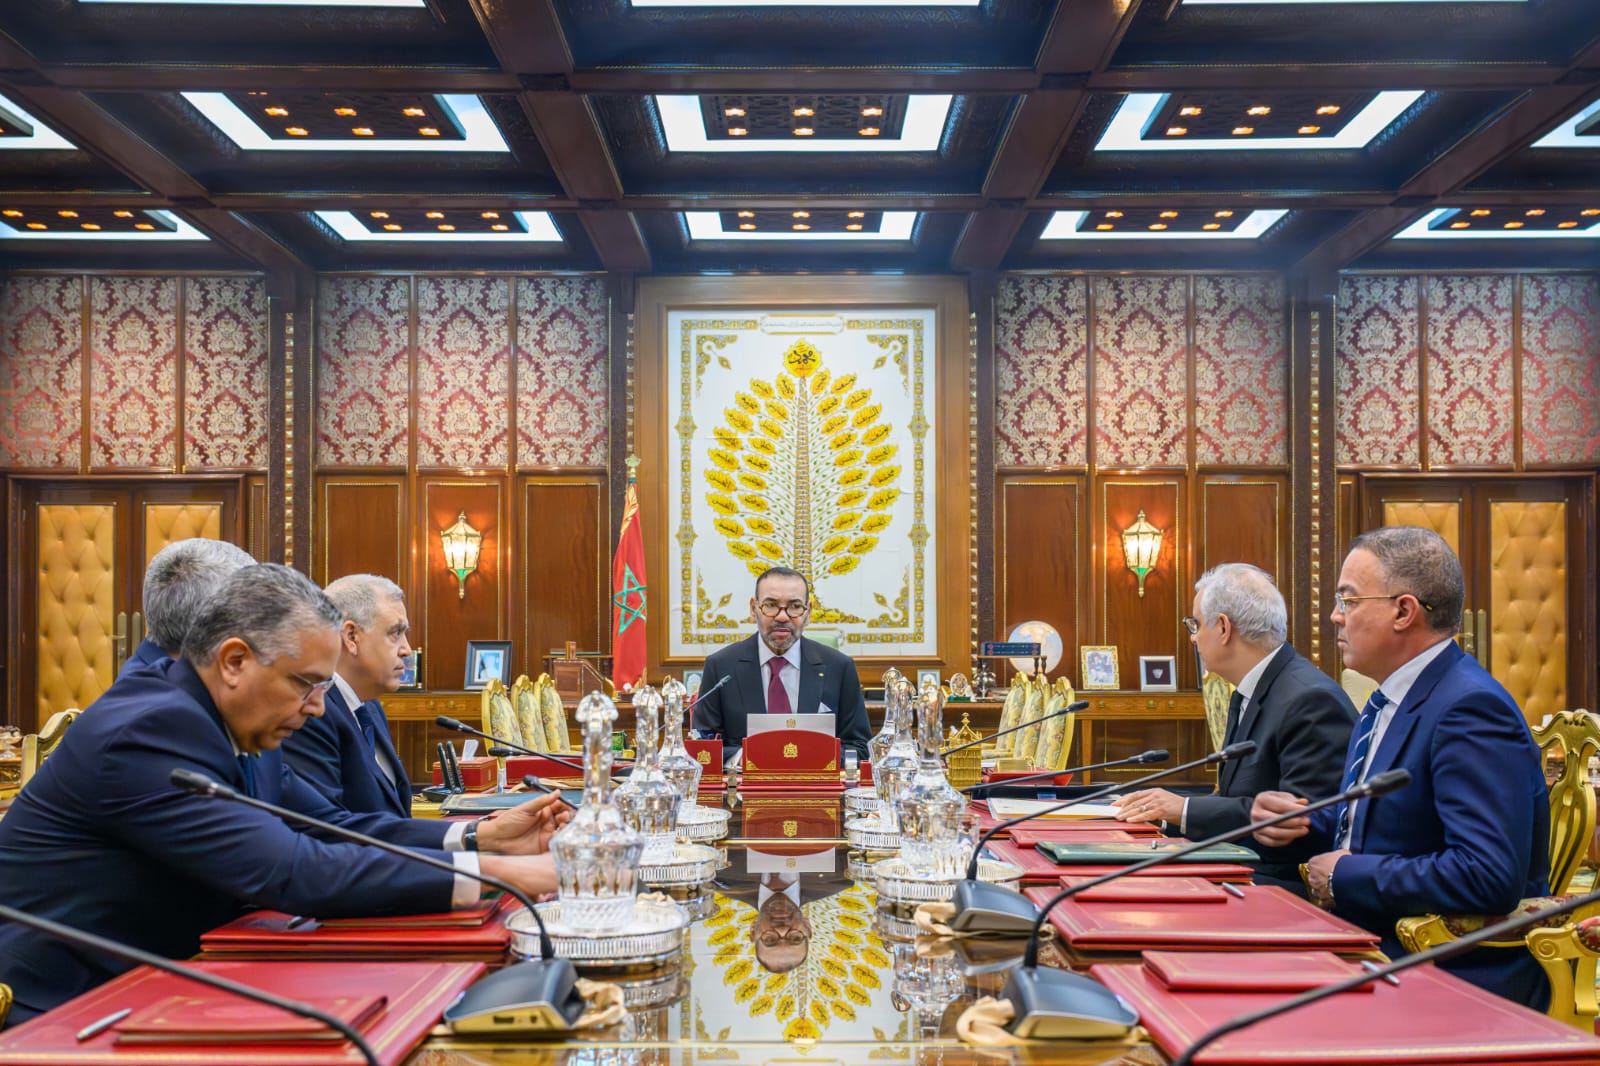 Maroc: le Roi préside une réunion sur la problématique de l’eau ( Document)